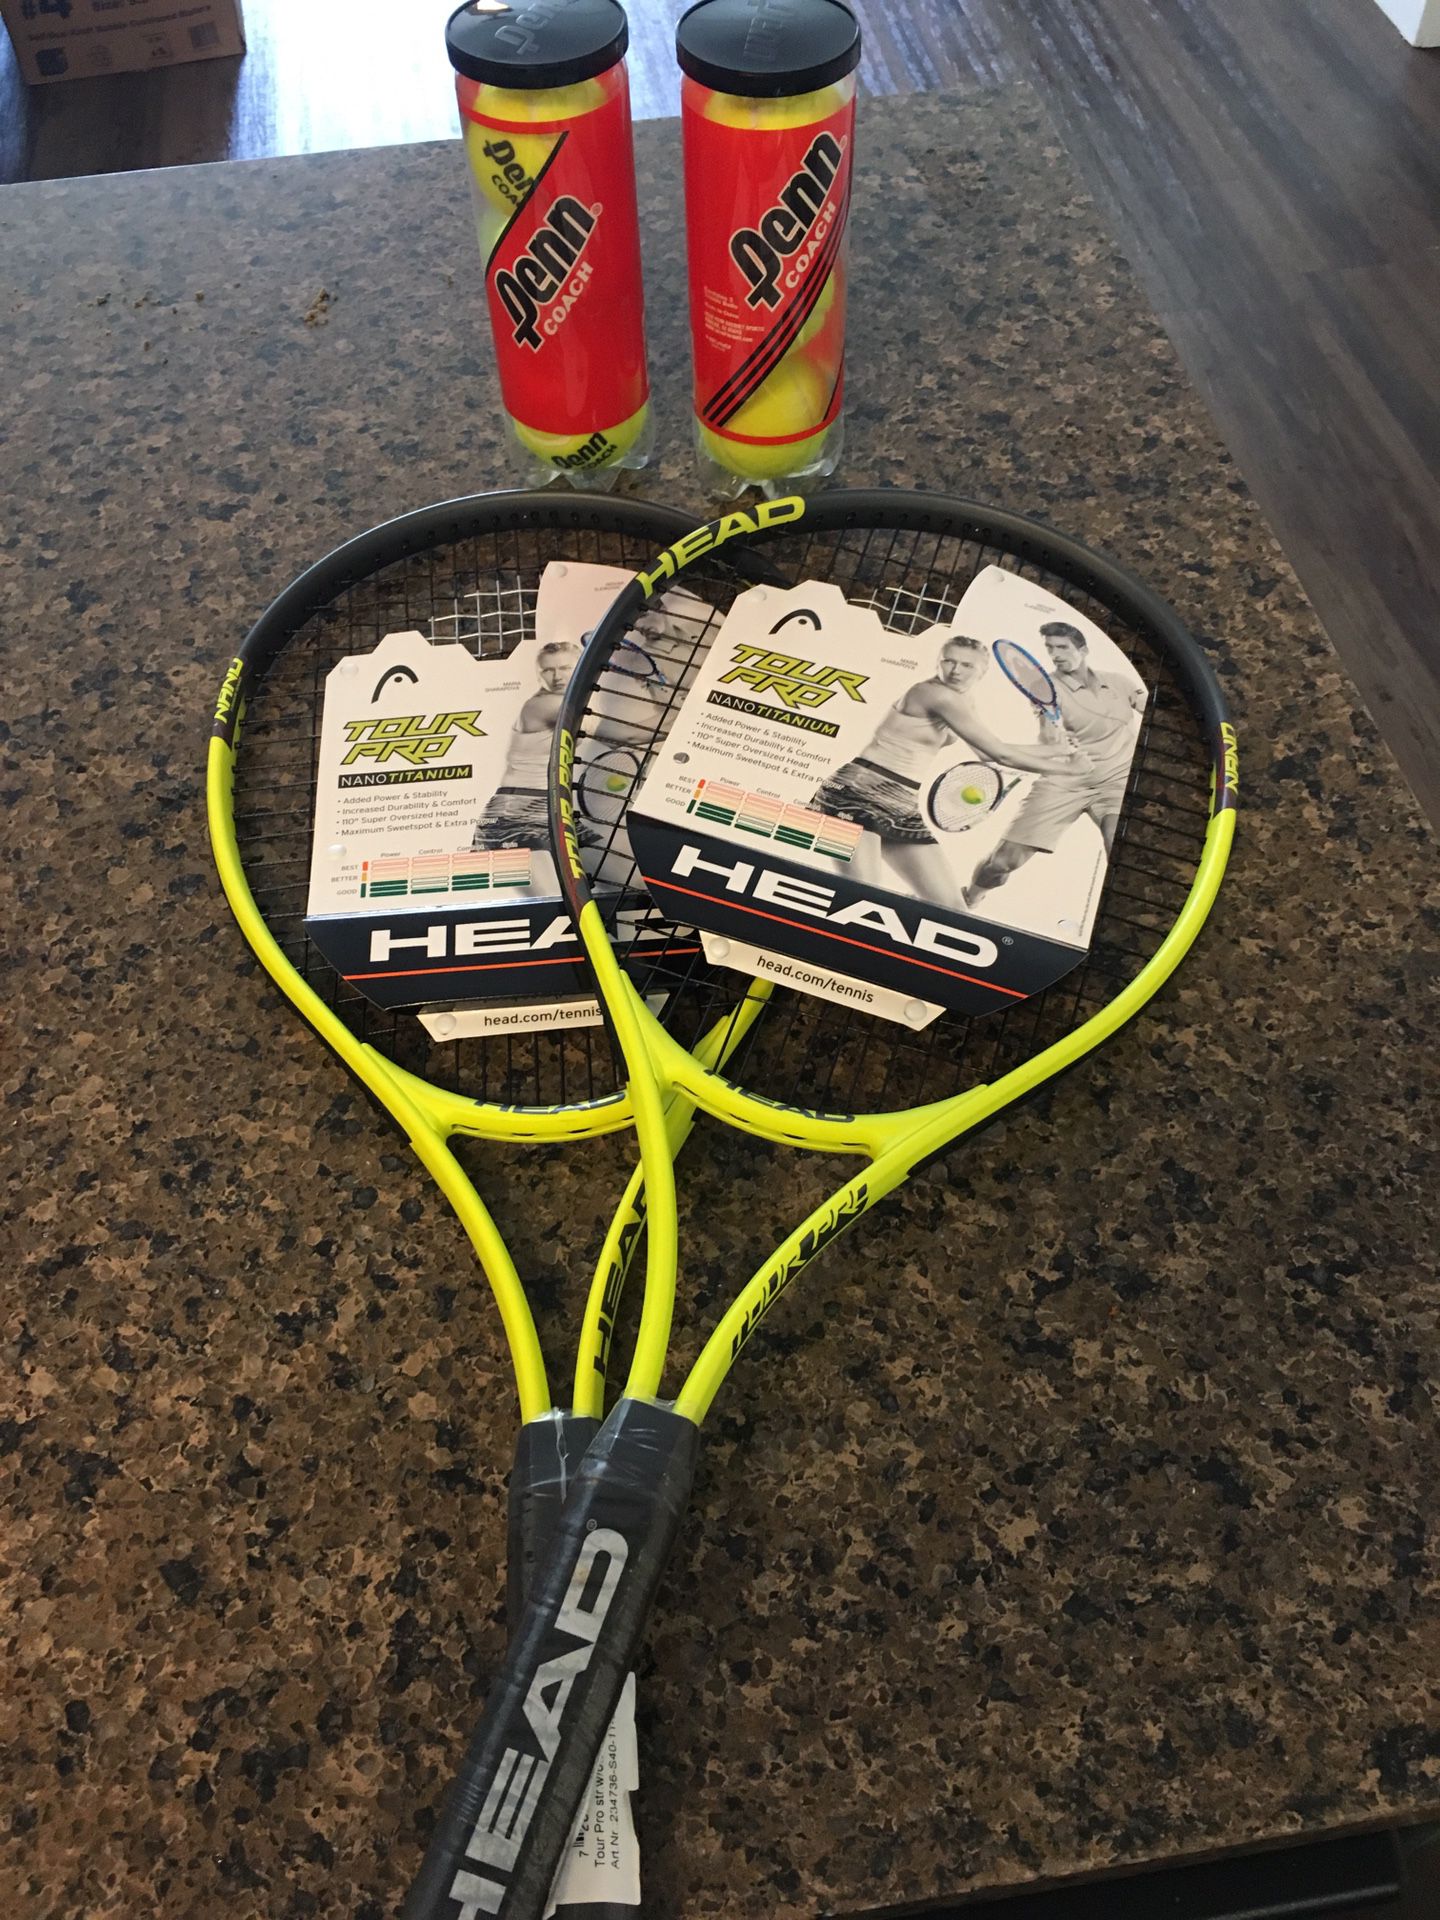 2 Brand New Tennis Rackets + 6 Balls